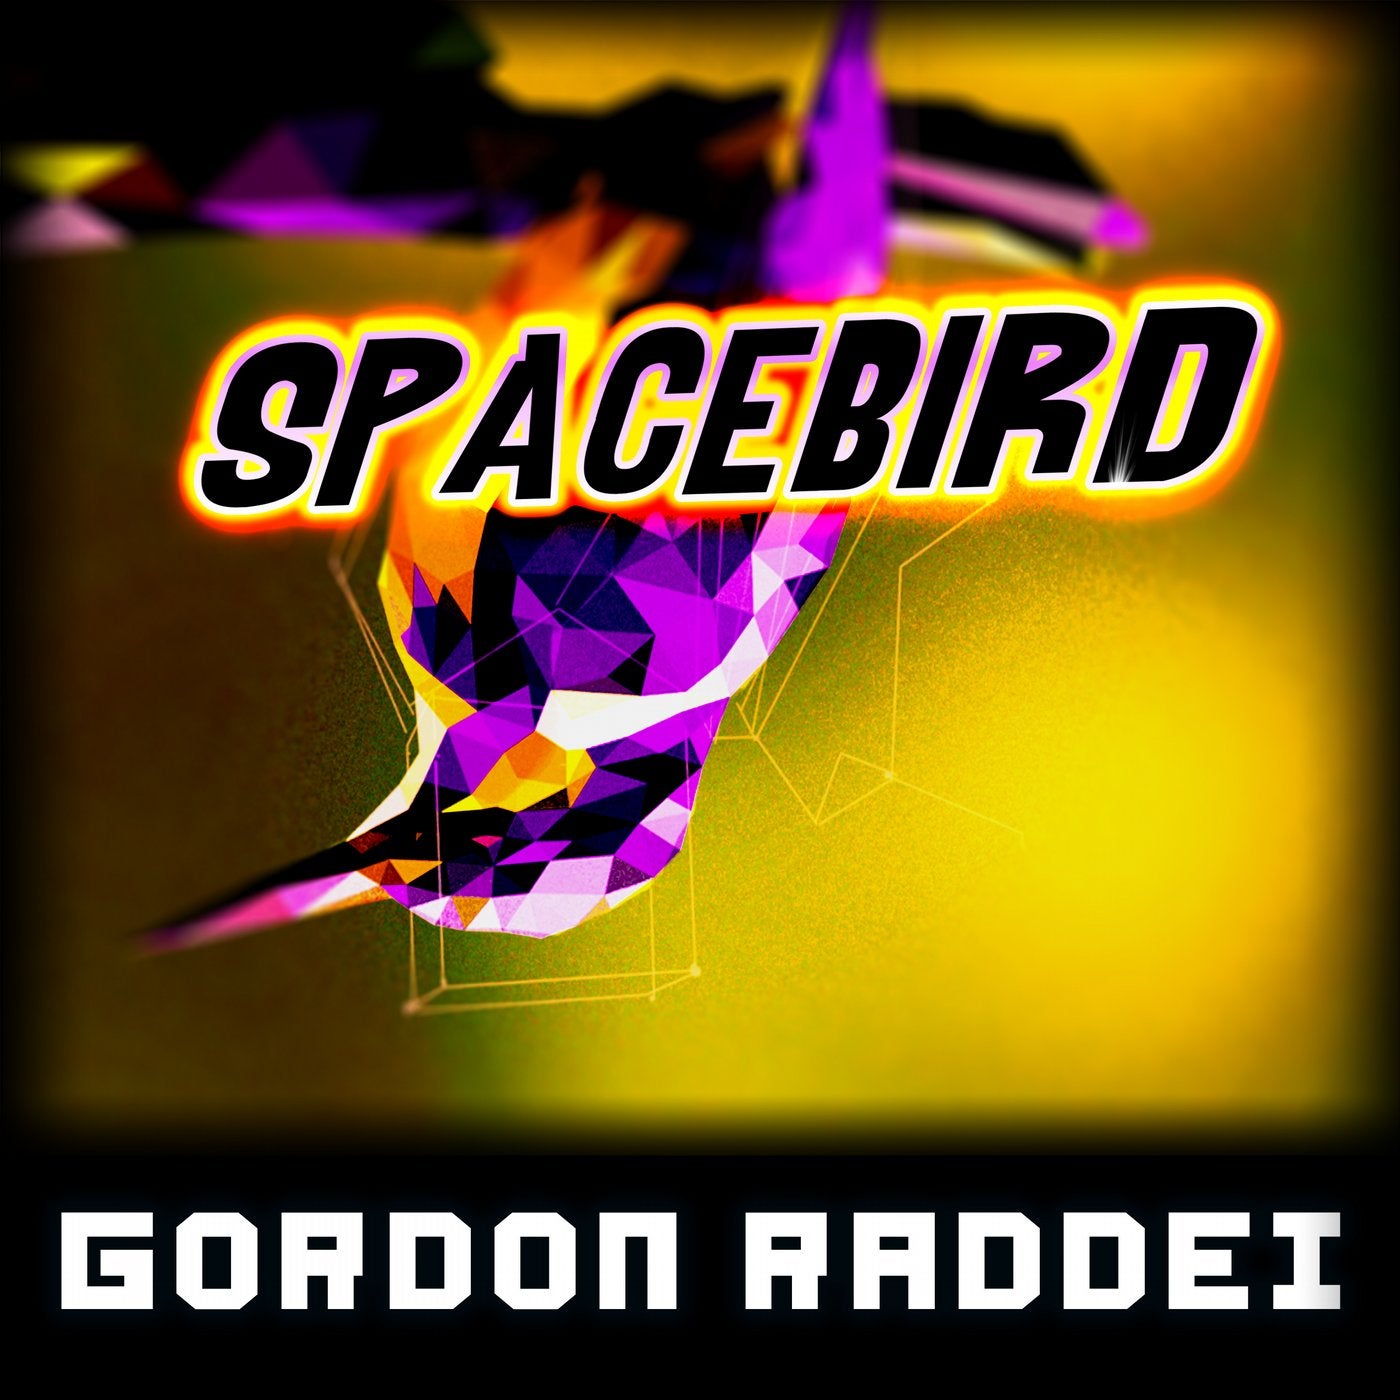 Spacebird